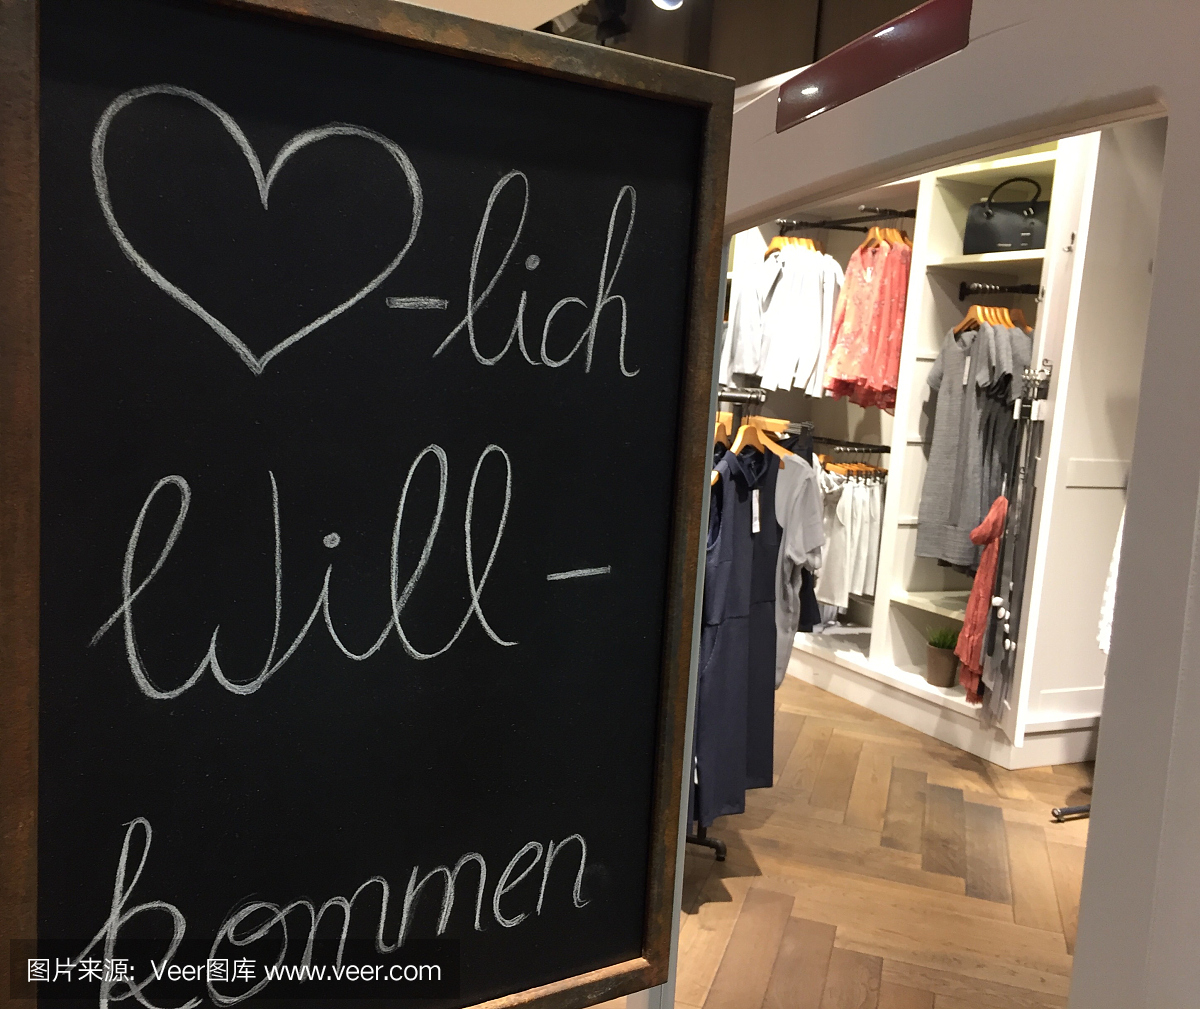 rzlich Willkommen是英文单词Welcome的德文翻译